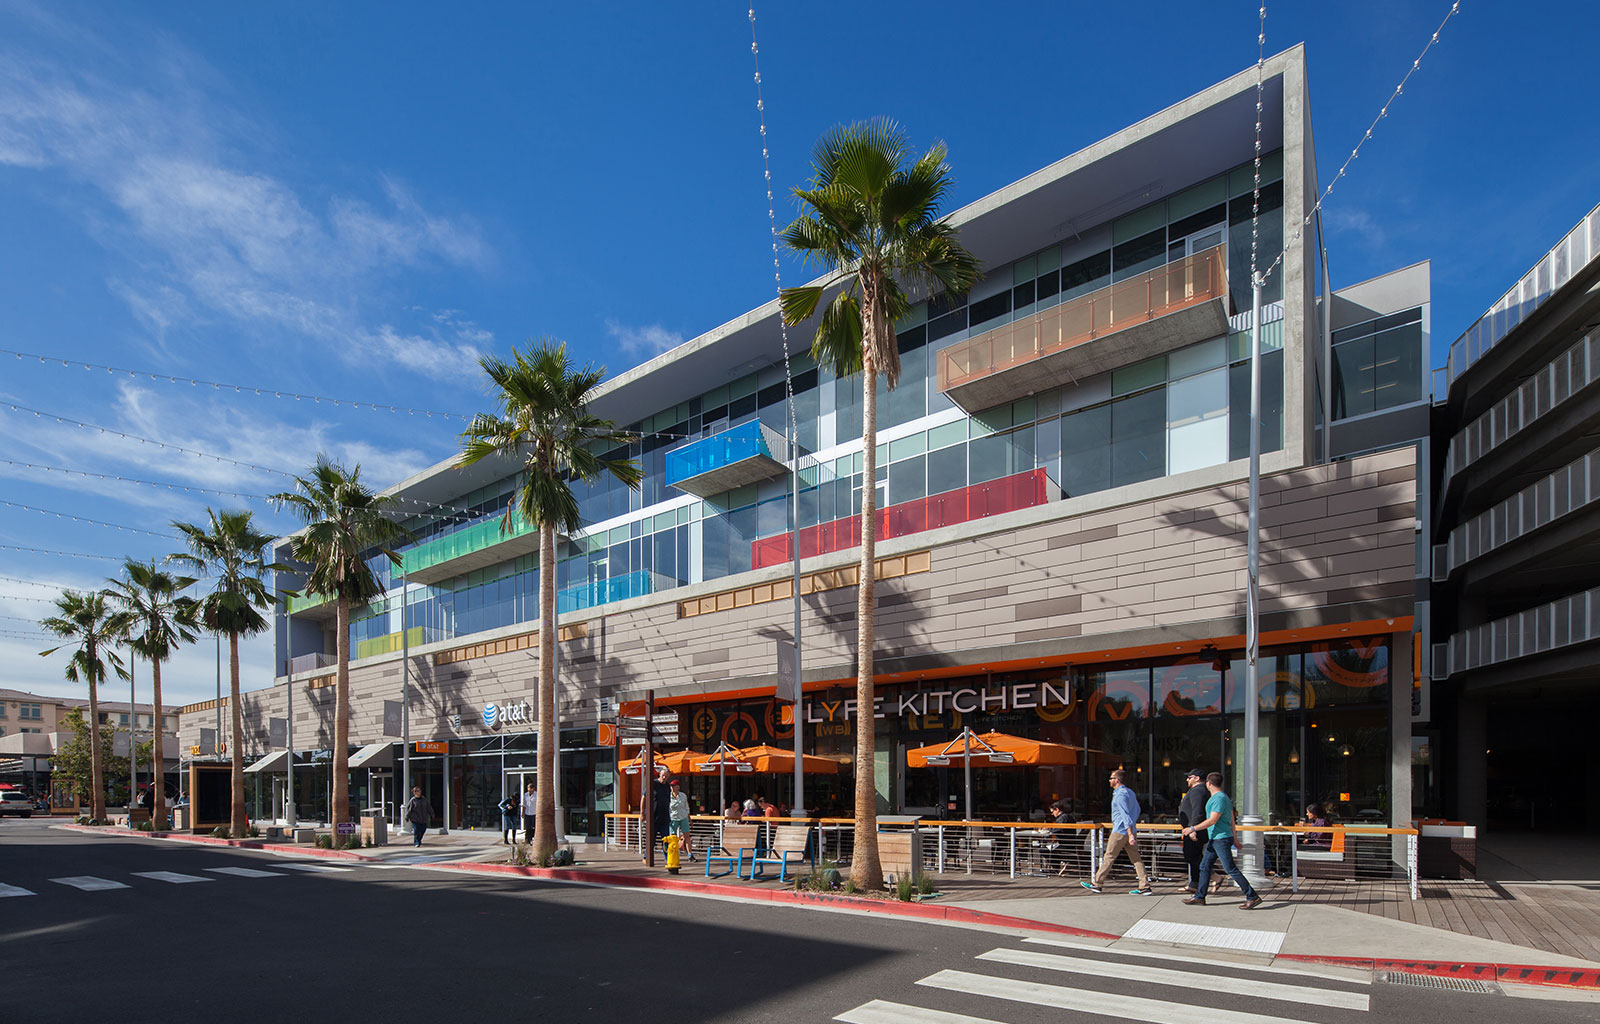 Runway at Playa Vista wins Los Angeles Business Council Architectural Award